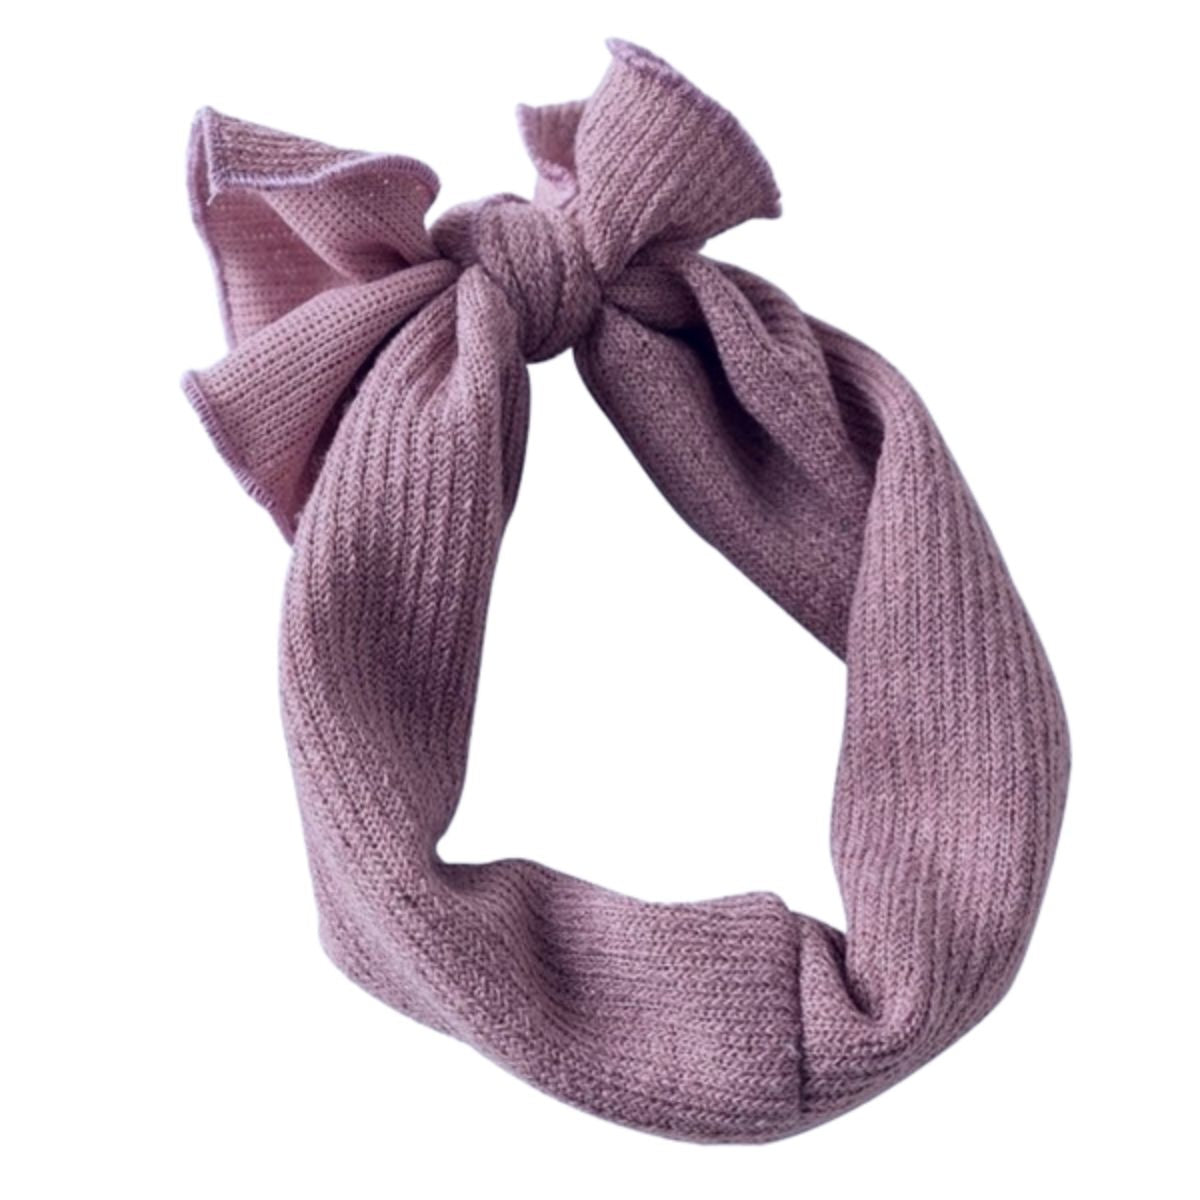 Ribbed bow headband- lilac